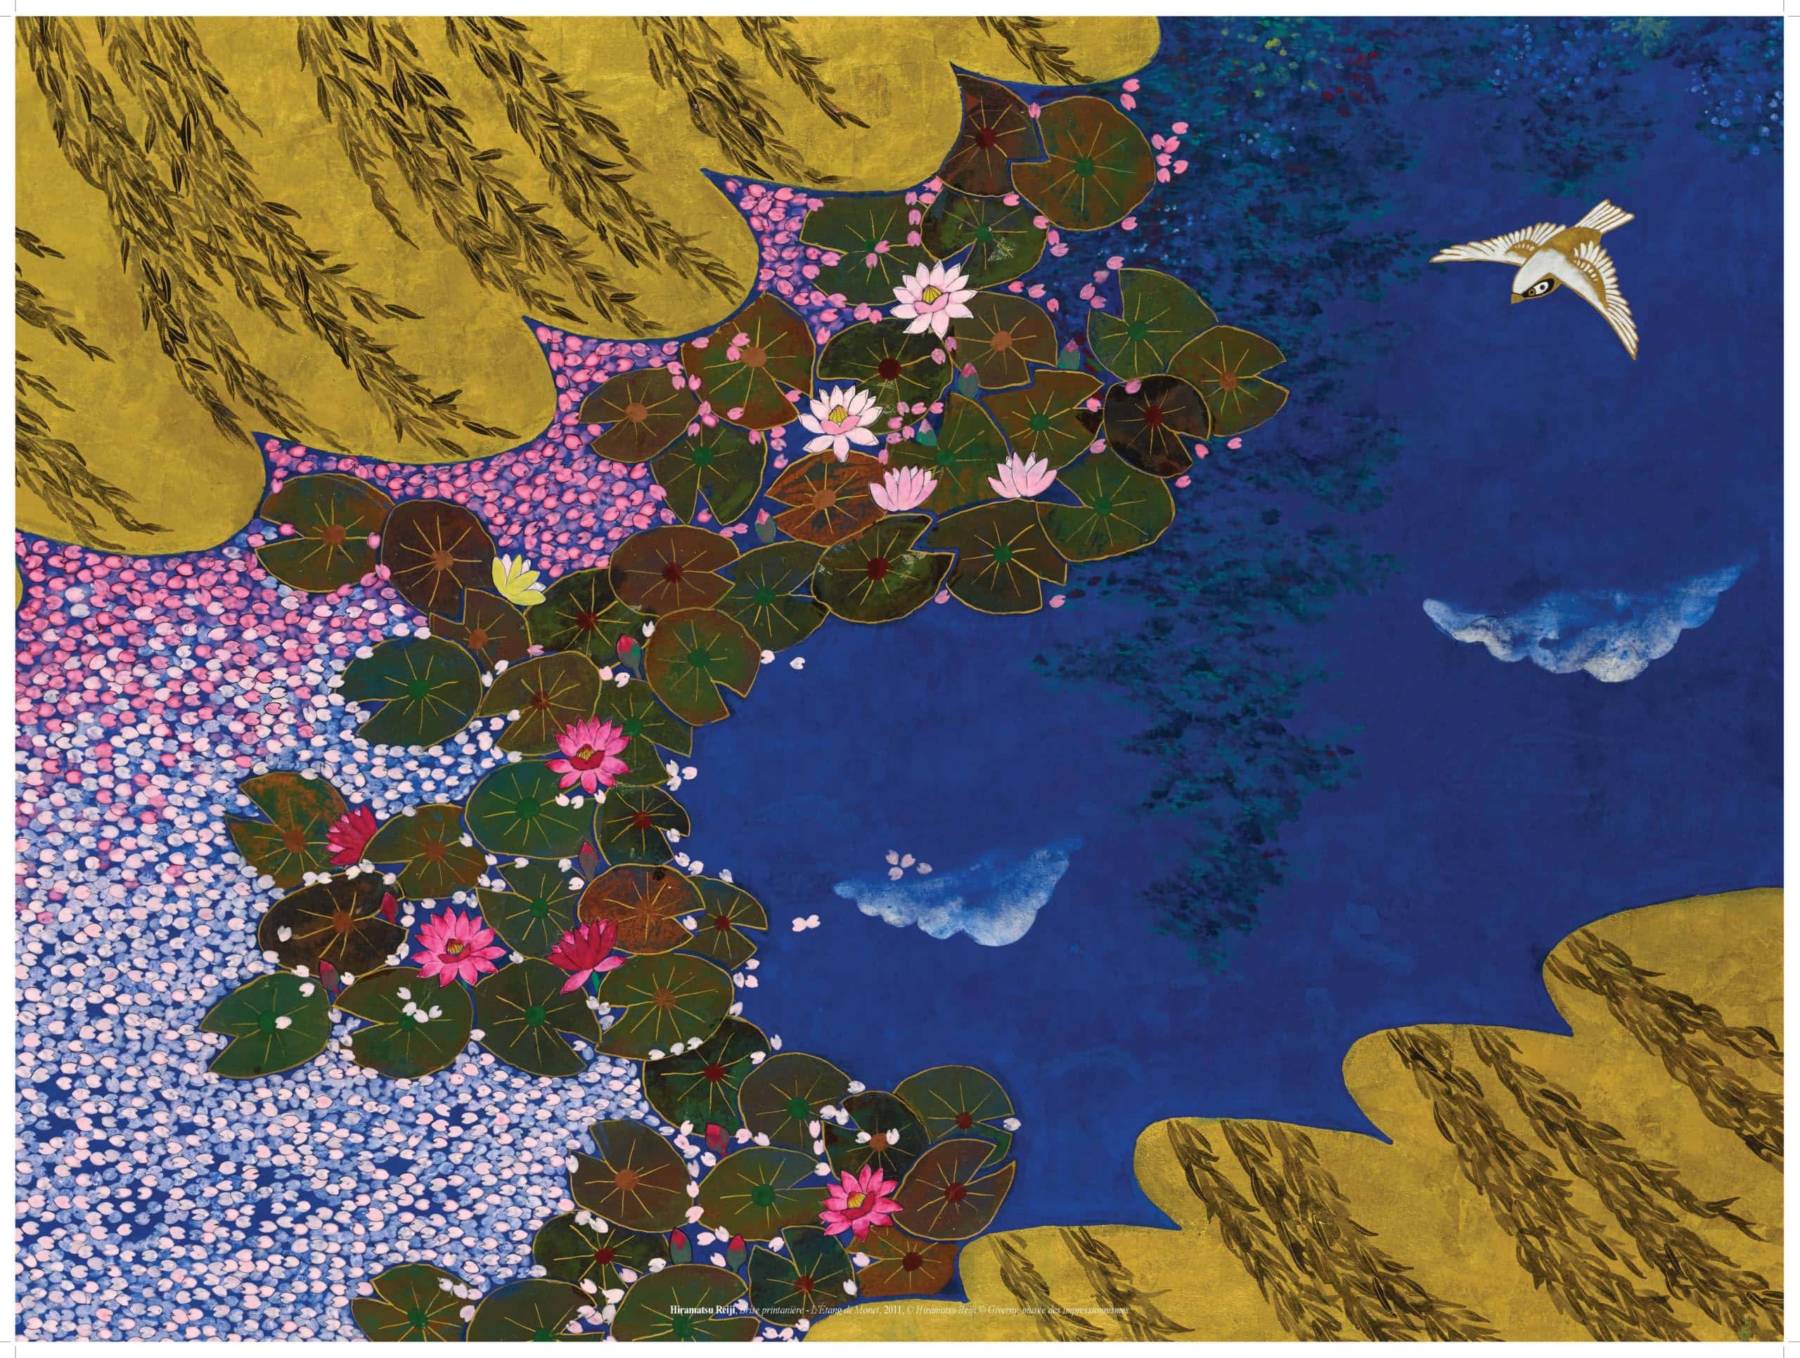 Hiramatsu Reiji (né en 1941) Brise printanière - L'Étang de Monet, 2011 Nihonga, 112,1 x 162,1 cm Giverny, musée des impressionnismes, MDIG 2013.1.7 © Hiramatsu Reiji © Giverny, musée des impressionnismes